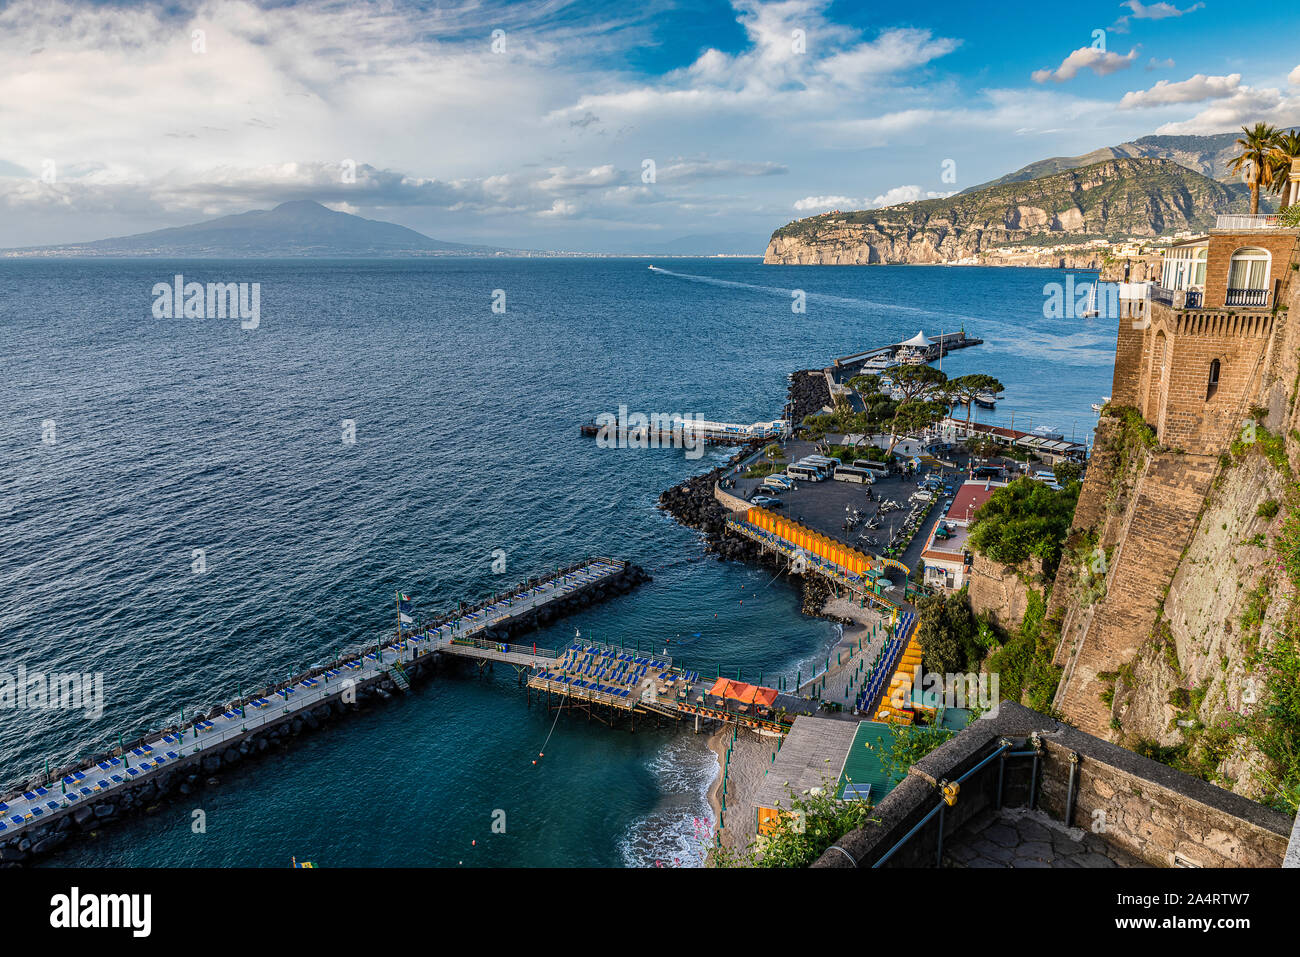 La belle ville italienne de Sorrento situé dans la baie de Naples. Le Vésuve peut être vu dans la distance. Banque D'Images